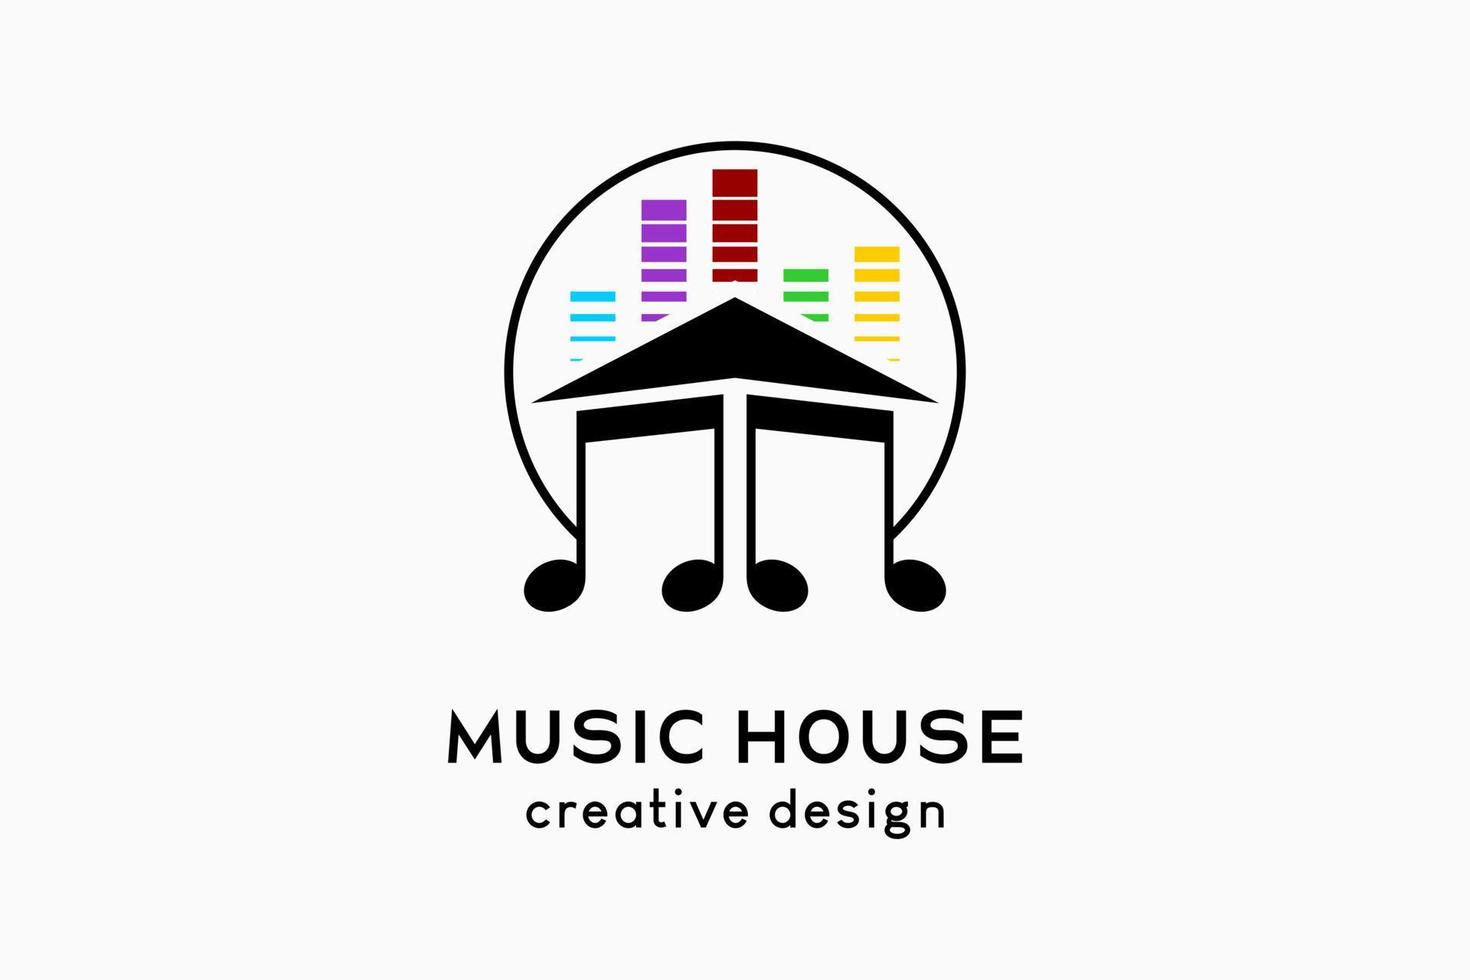 création de logo de maison de musique, icône de tonalité de forme de maison combinée à une icône d'égaliseur coloré dans un cercle vecteur